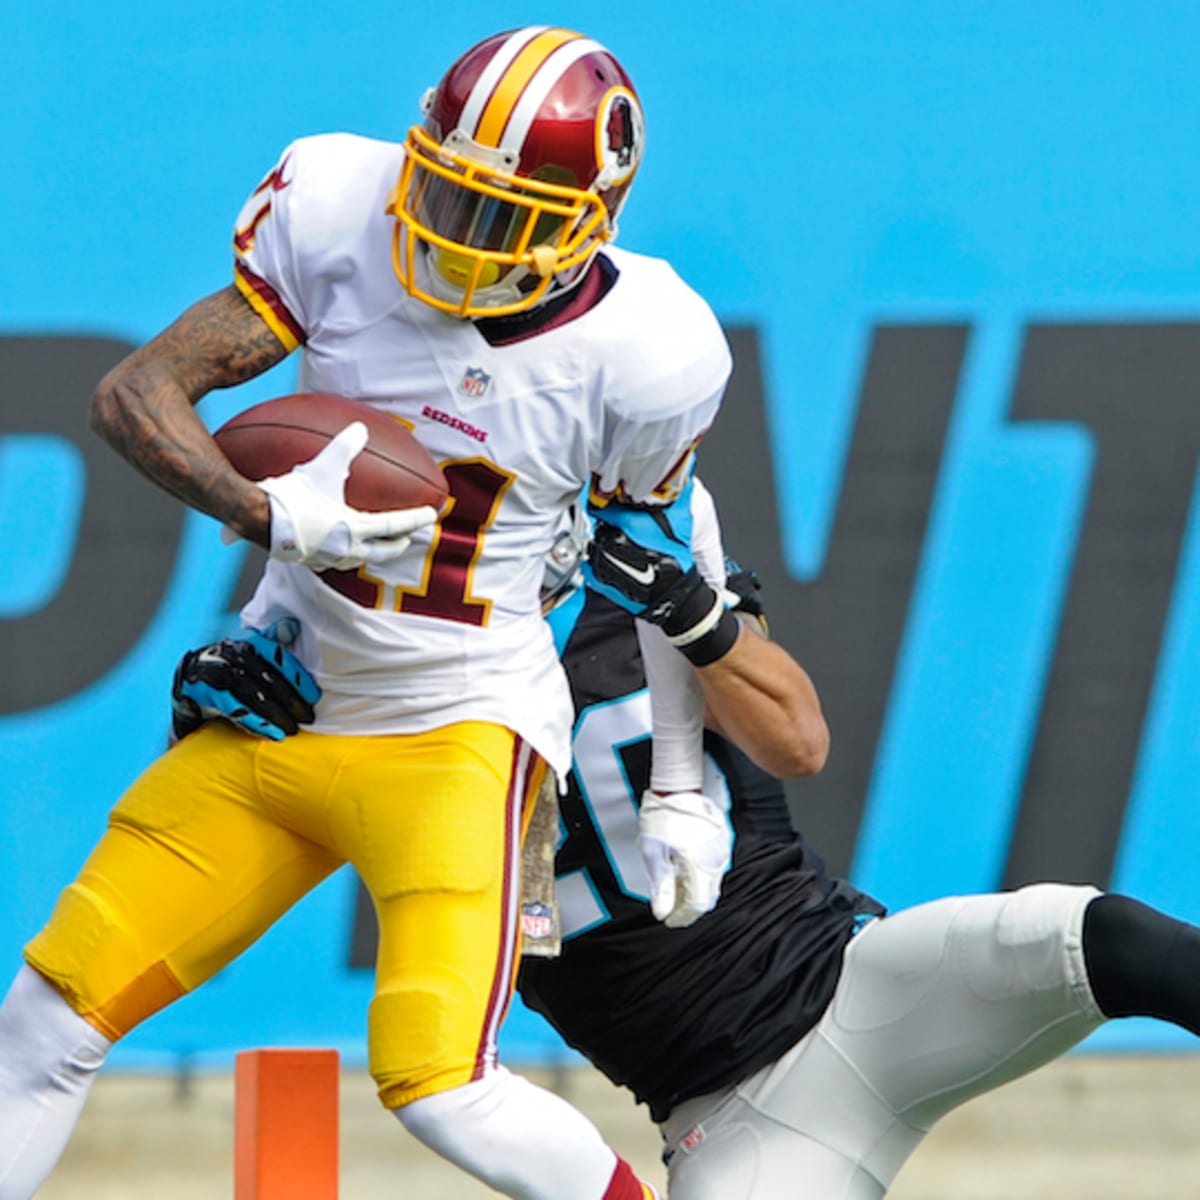 Video: Redskins WR DeSean Jackson makes 56-yard touchdown catch